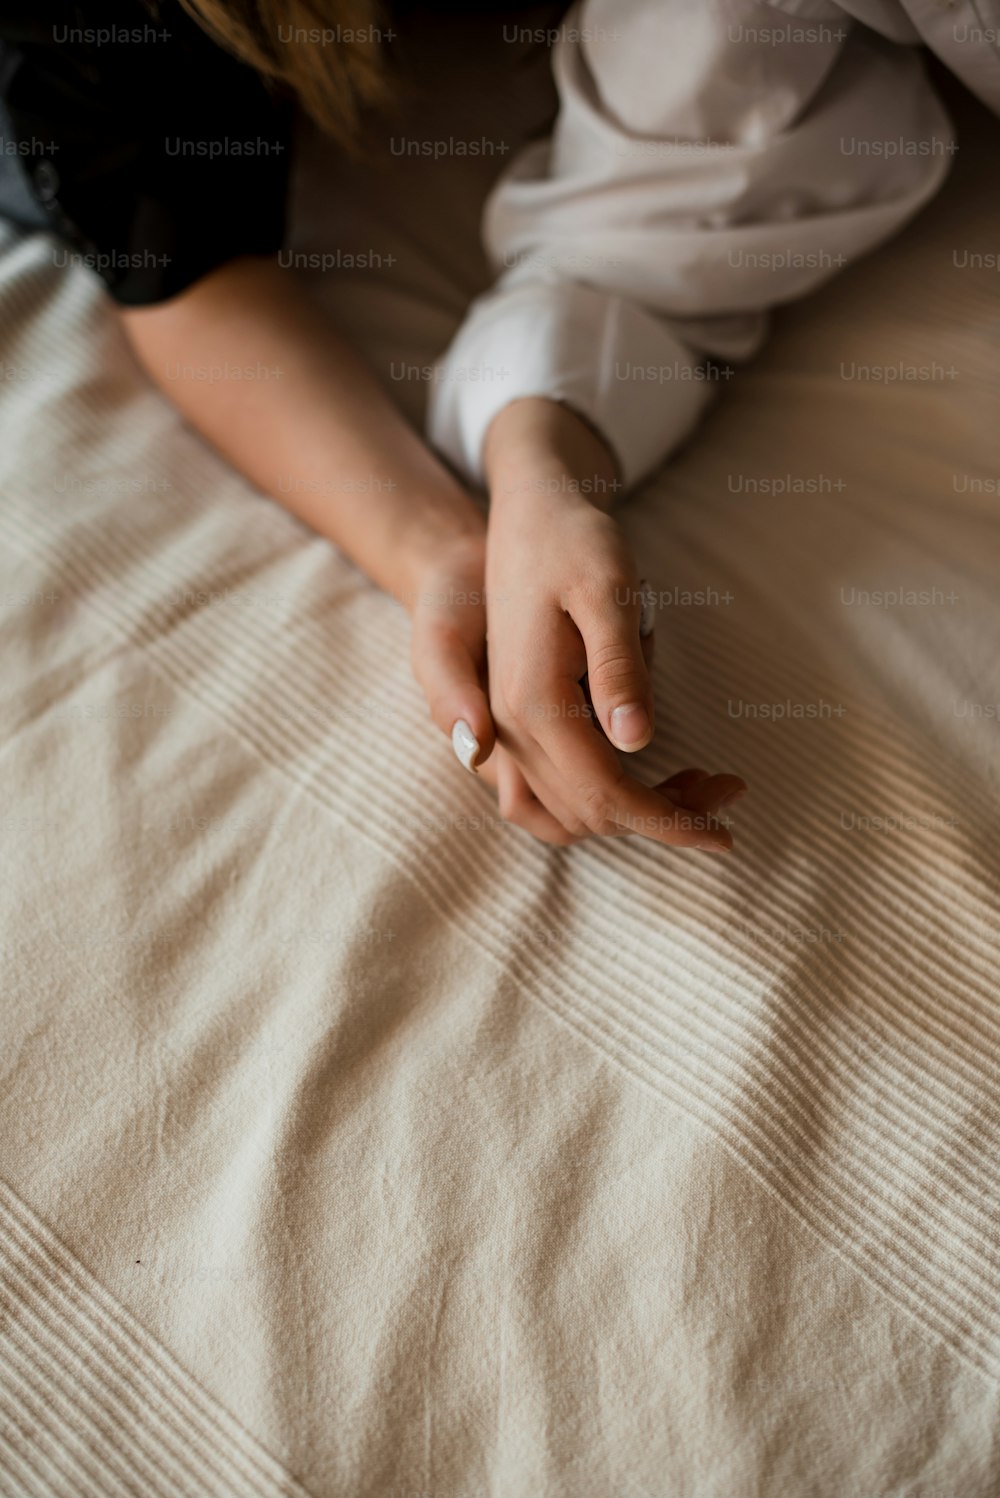 枕に手を置いた状態でベッドに横�たわる女性